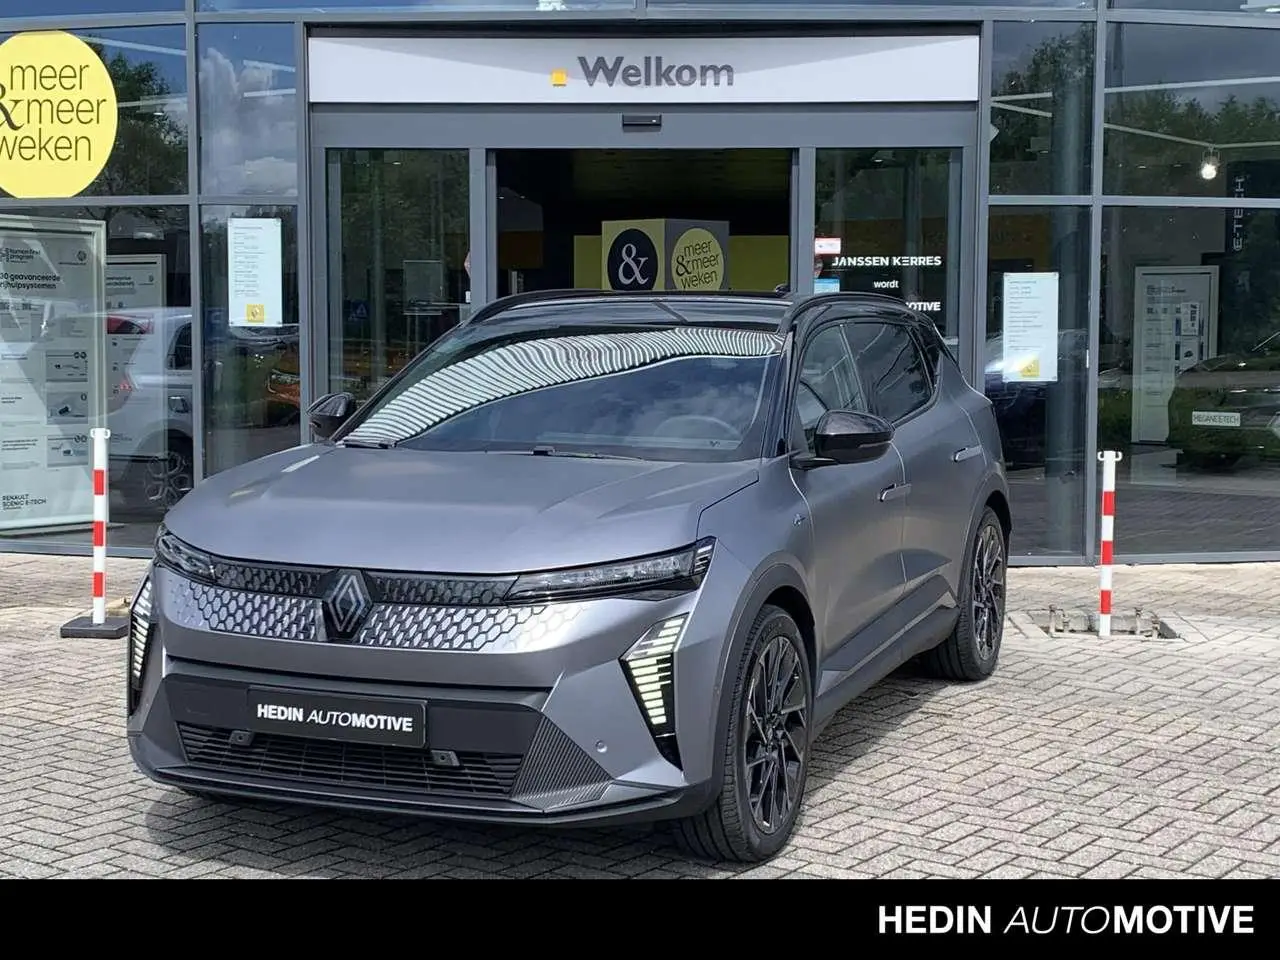 Photo 1 : Renault Scenic 2024 Électrique